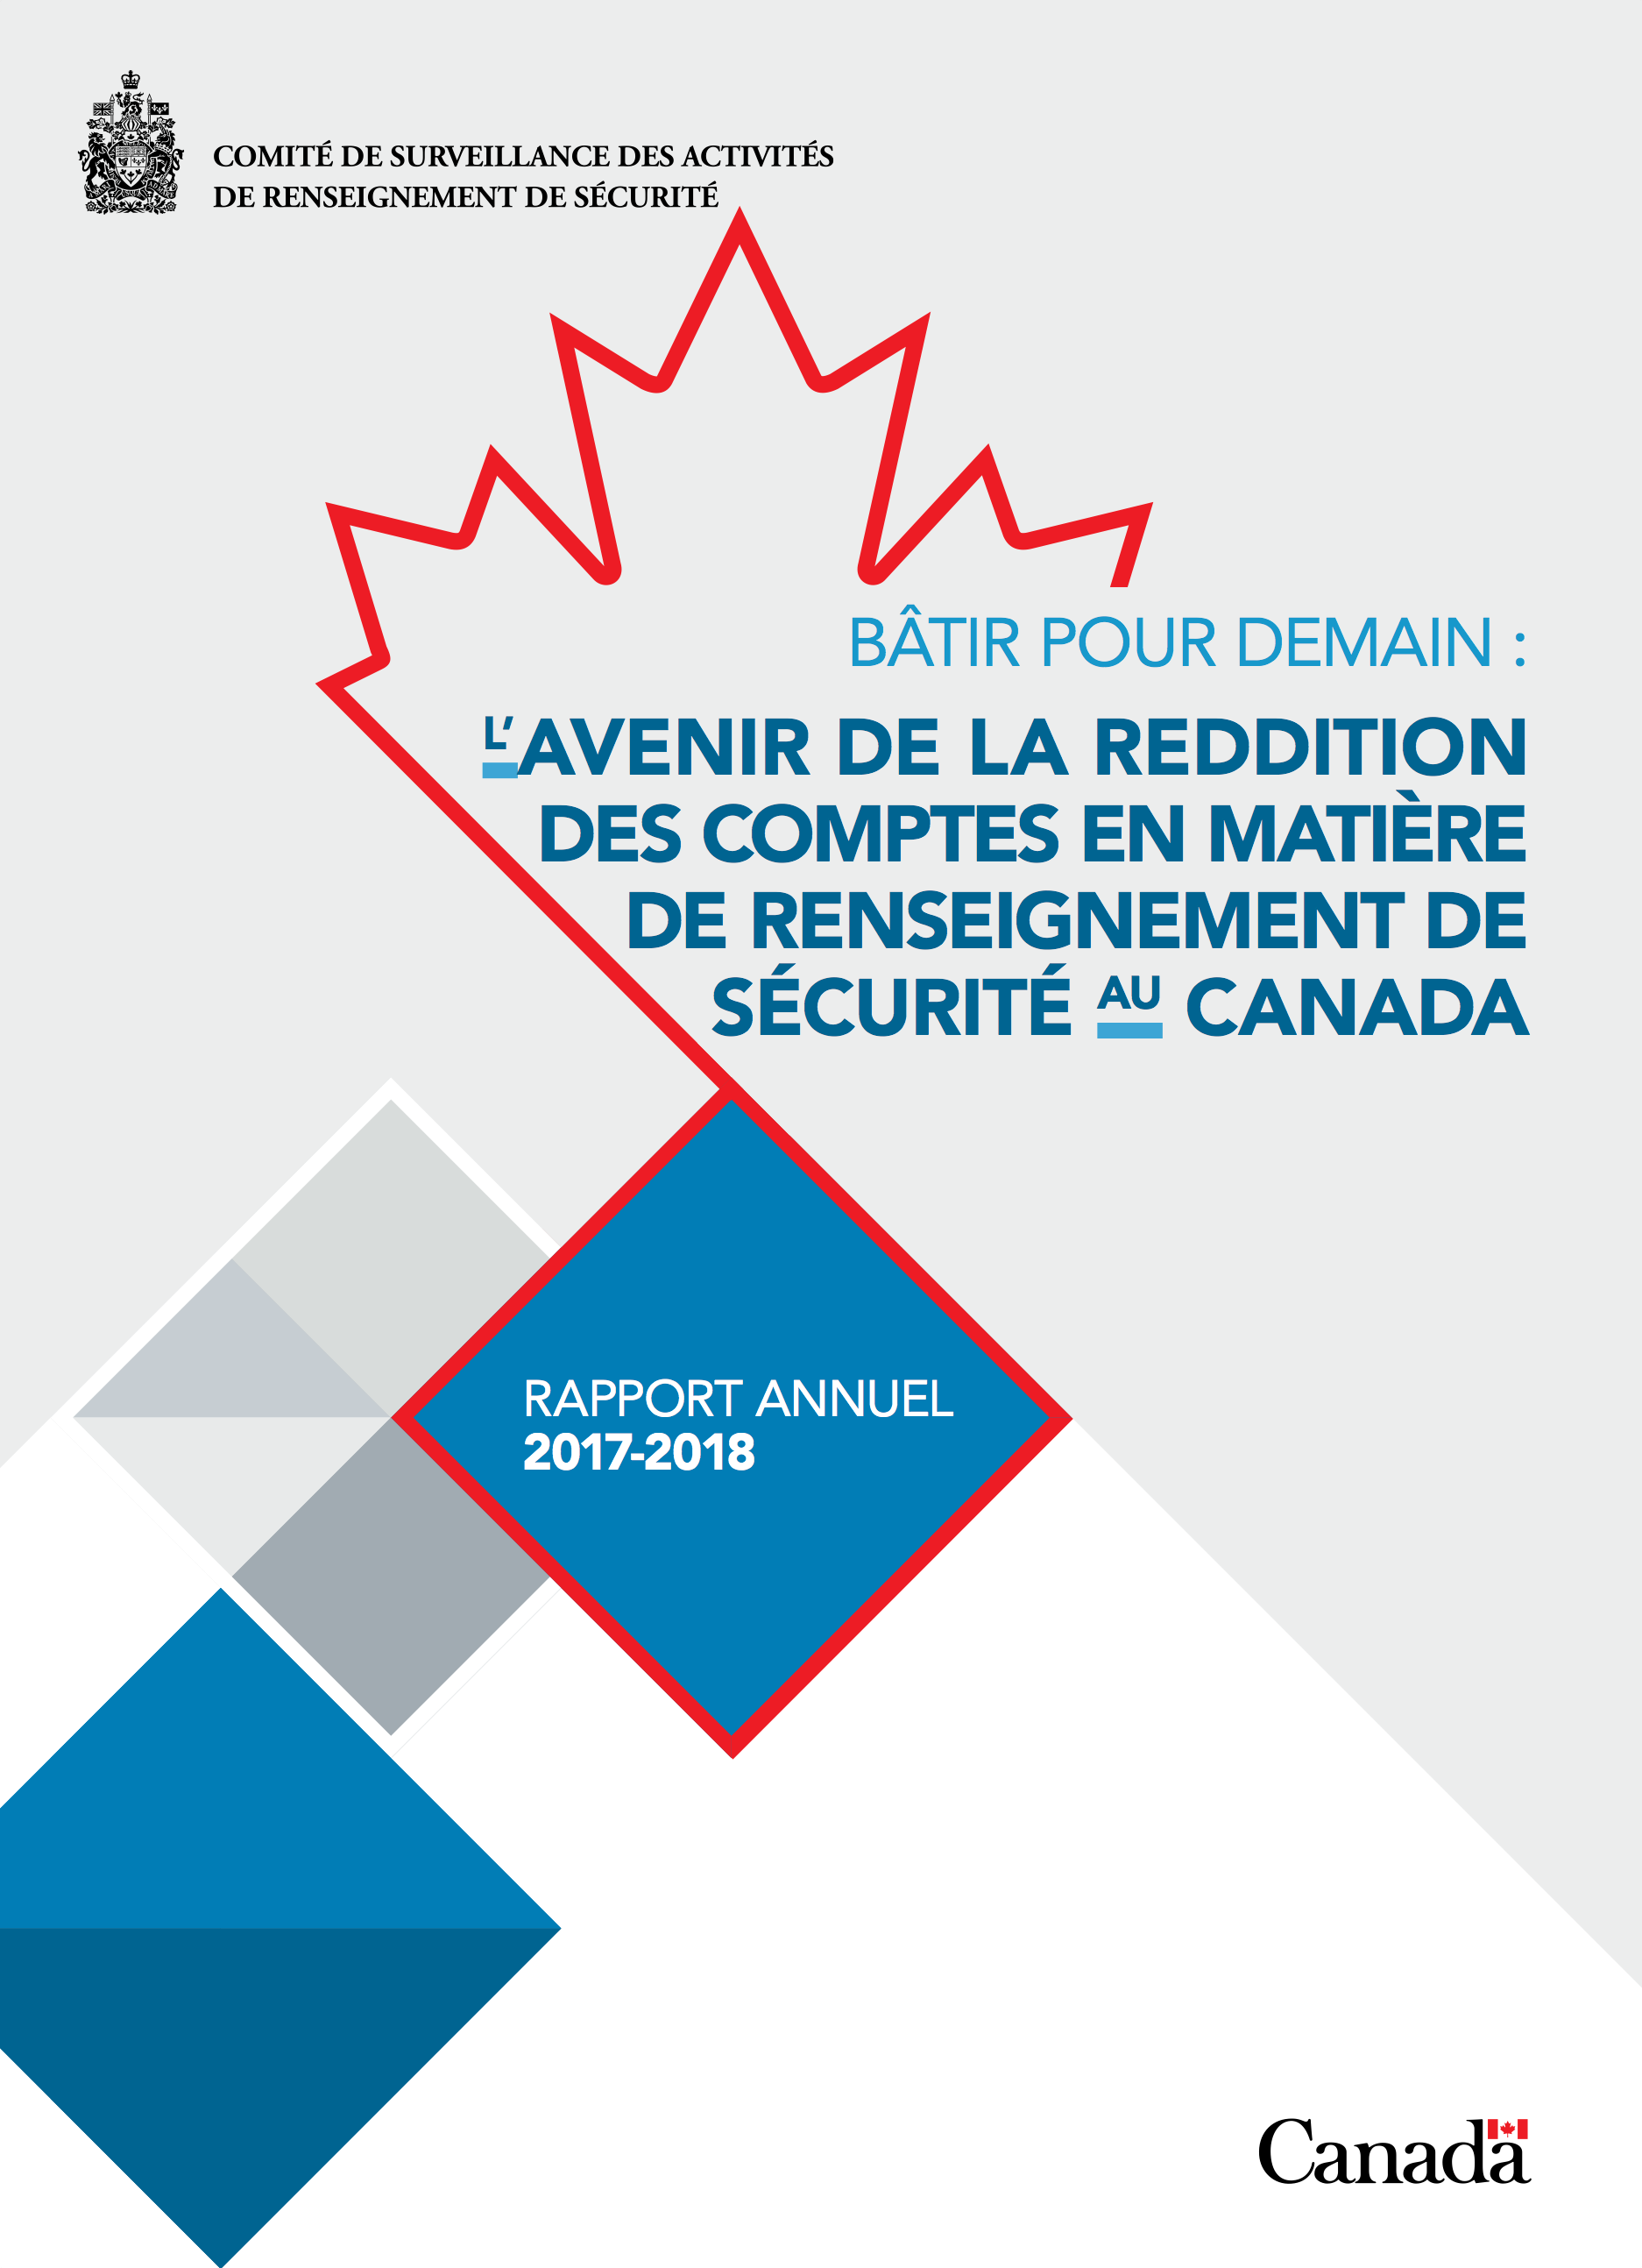 Rapport annuel 2017-2018 : Bâtir pour demain : l’avenir de la reddition des comptes en matière de renseignement de sécurité au Canada